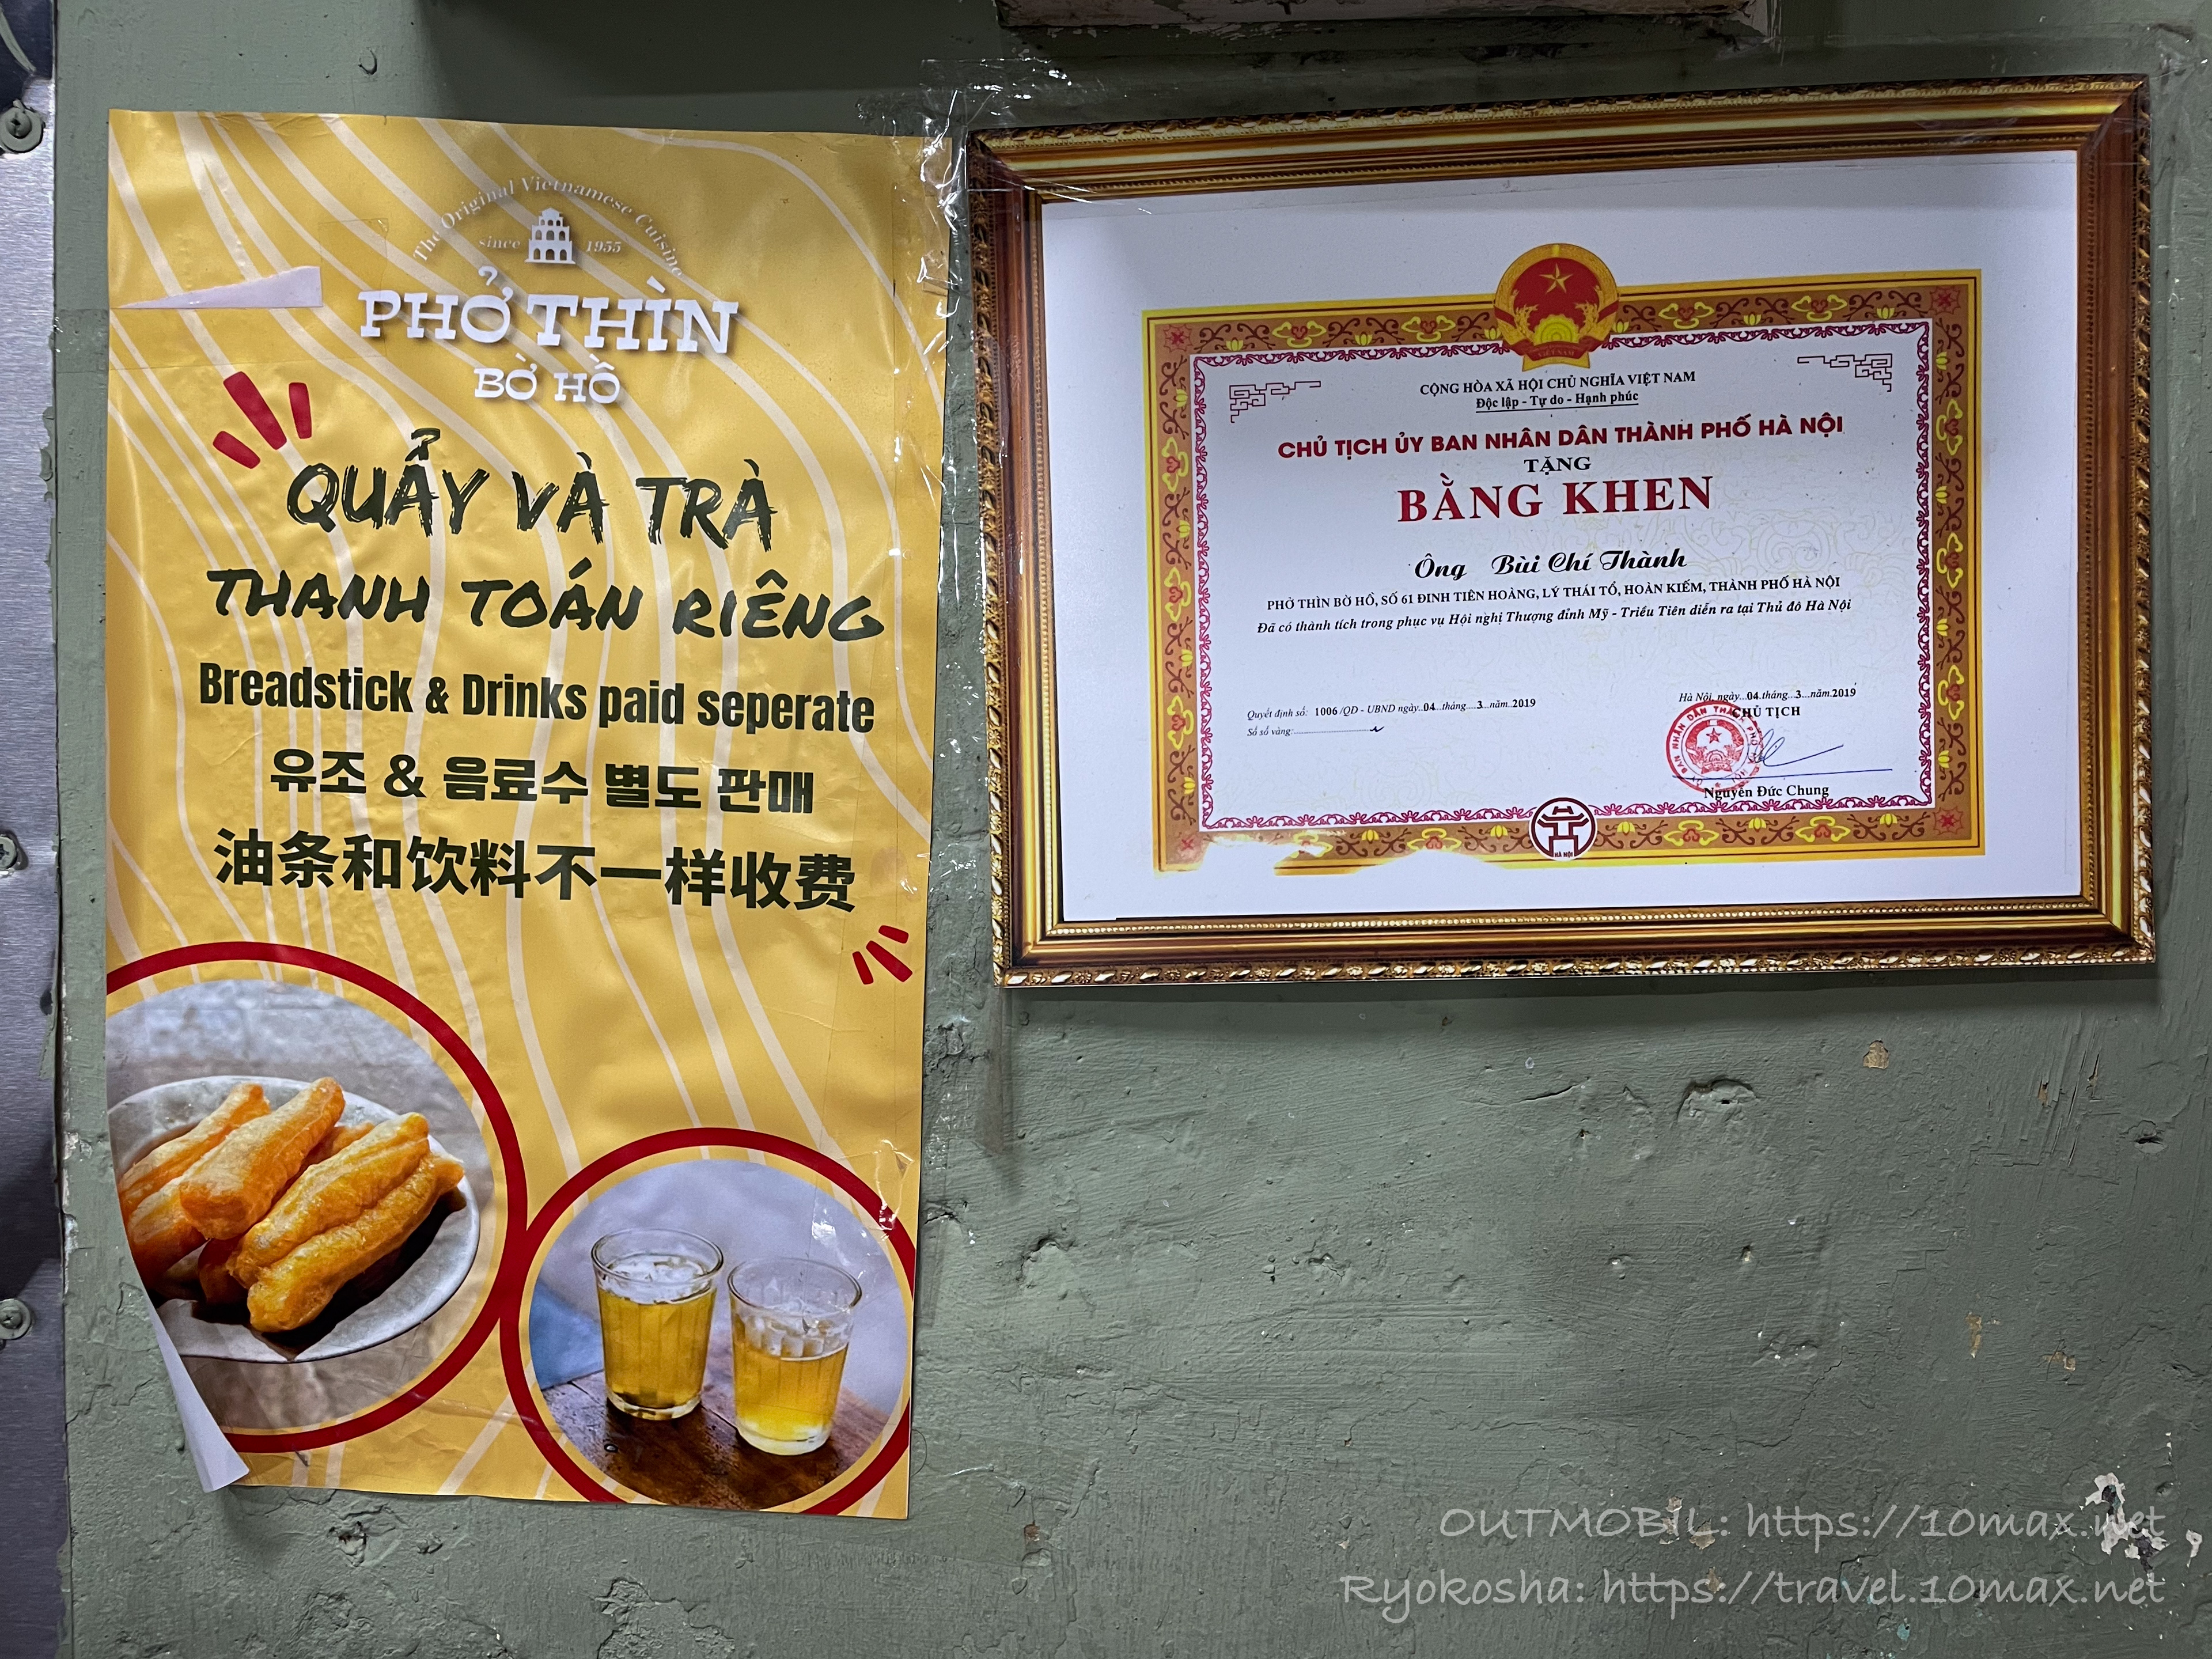 Phở Thìn Bờ Hồ（フォー・ティン・ボー・ホー）の店内, ハノイ, ホアンキエム湖